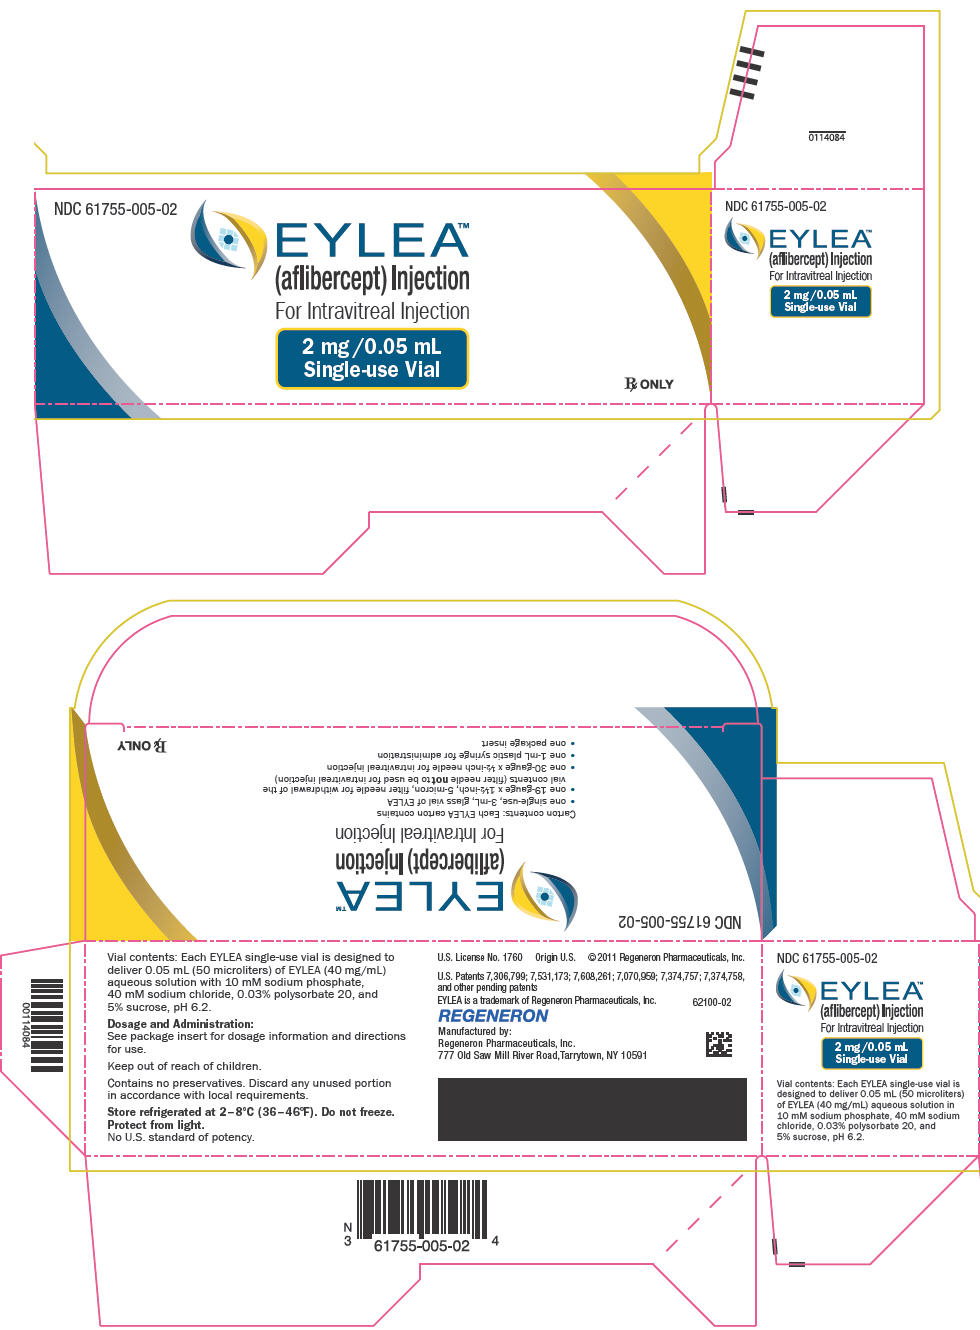 PRINCIPAL DISPLAY PANEL - 2 mg/0.05 mL Vial Carton